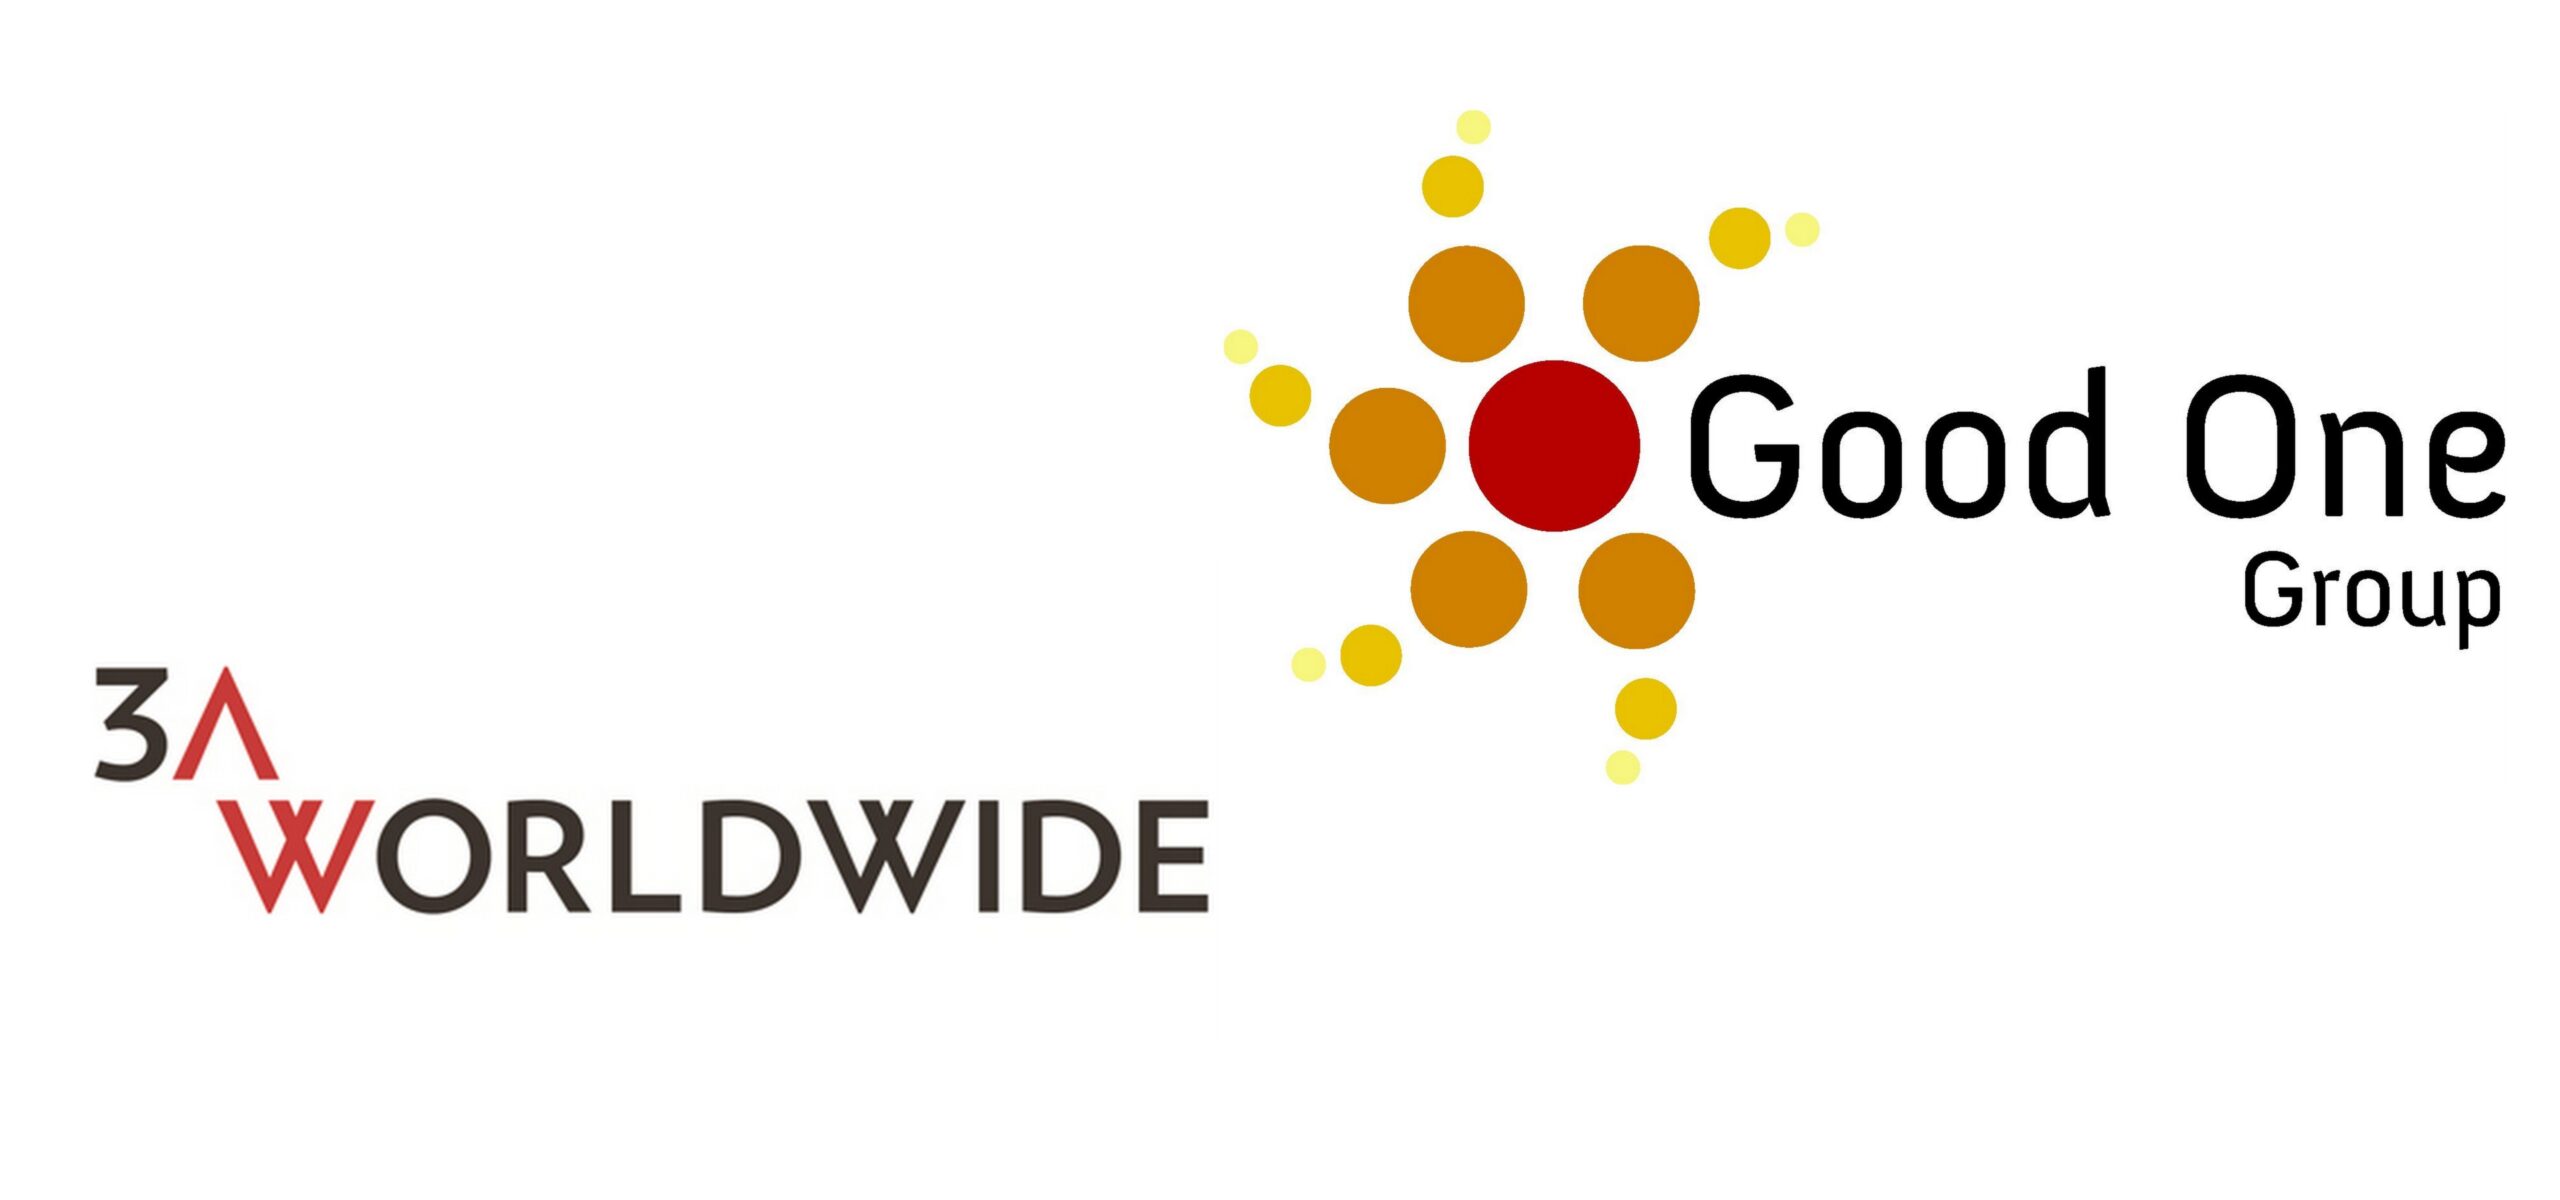 Good One Group dołącza do międzynarodowej sieci 3AWORLDWIDE Absolute Communications Mediarun Com Good One Group scaled